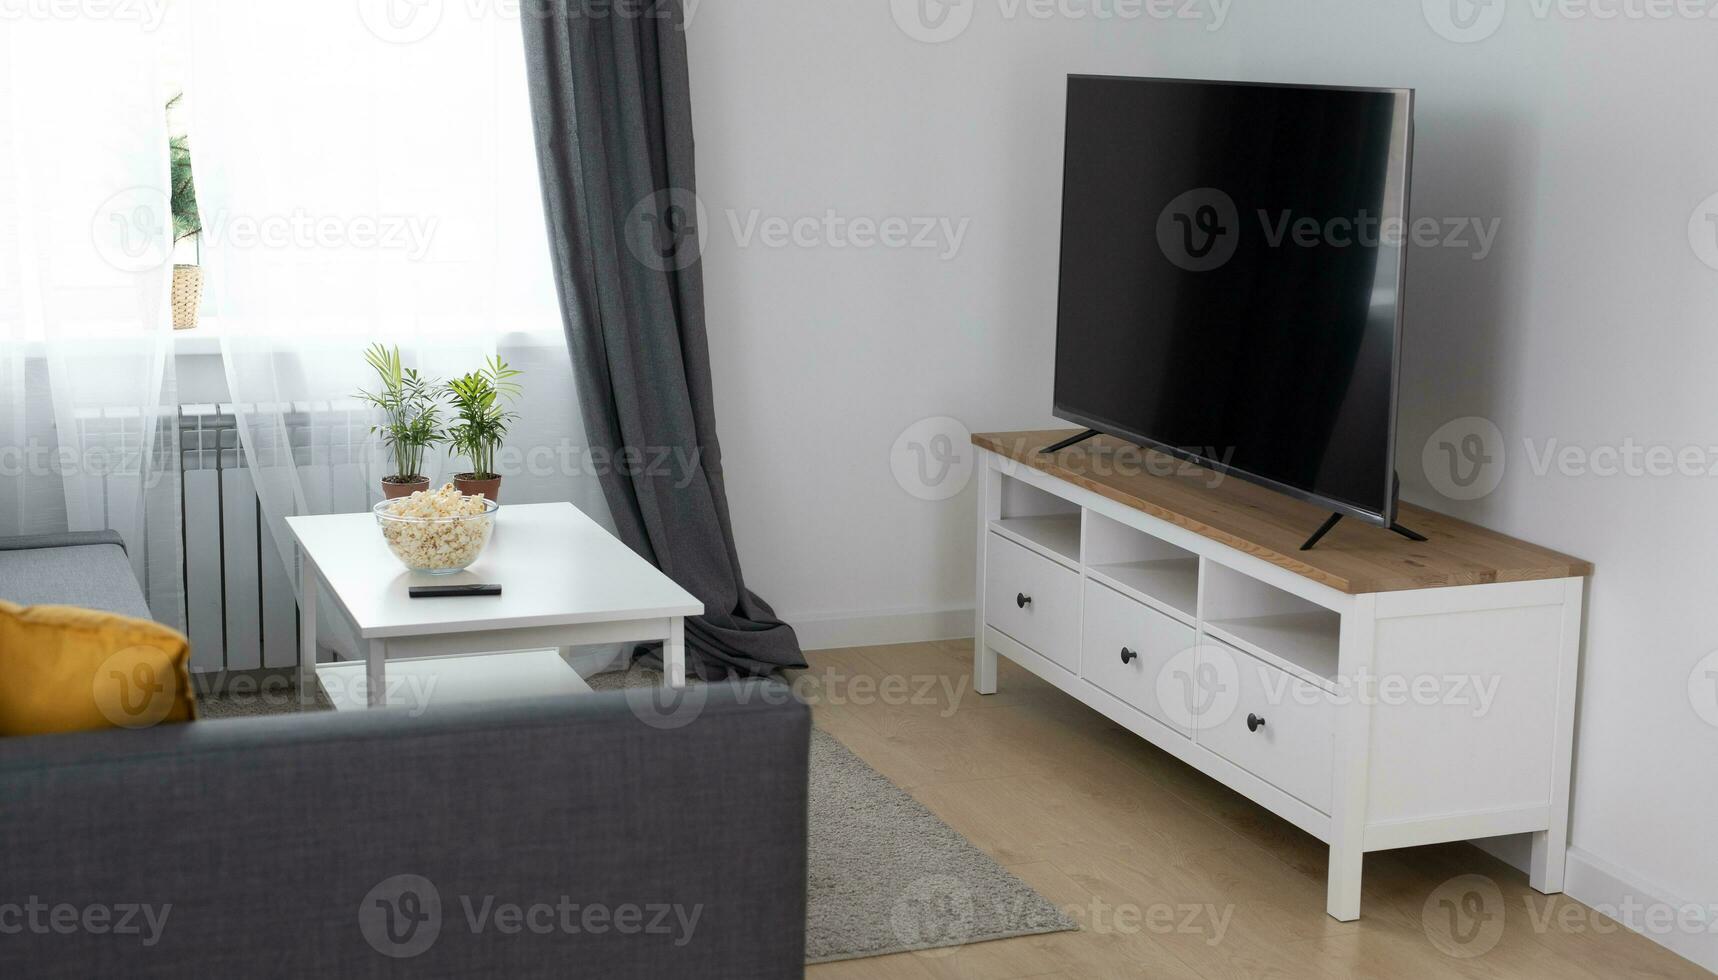 gemütlich Zimmer Innere mit stilvoll Möbel skandinavisch Stil und Dekor und modern Fernseher einstellen - - Innere und komfortabel Zuhause Konzept foto